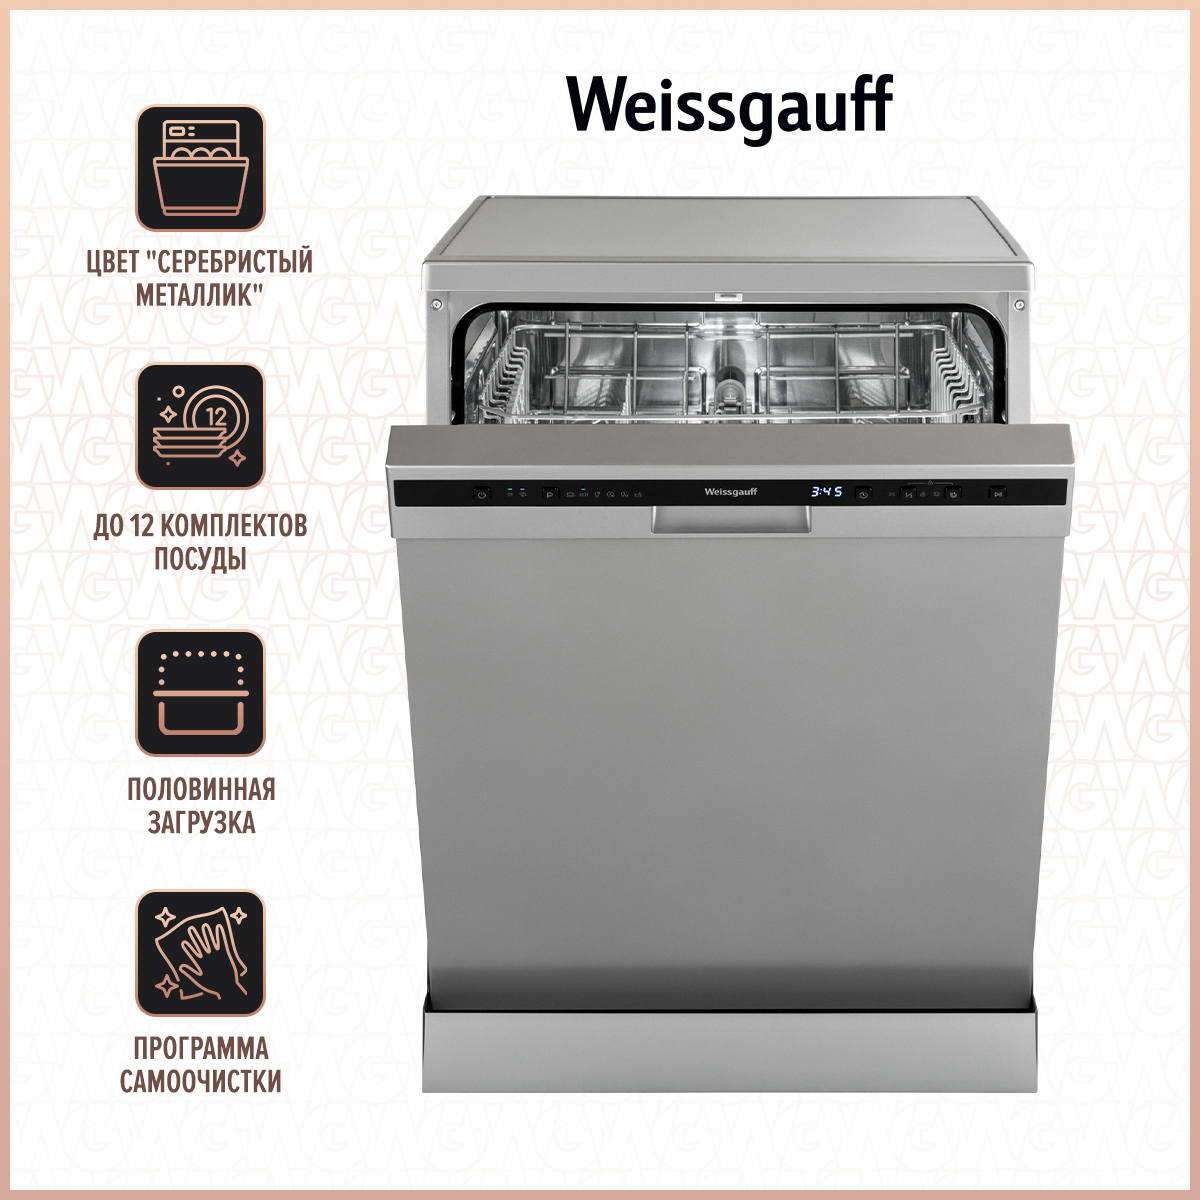 Посудомоечная машина Weissgauff DW 6026 D Silver серебристый